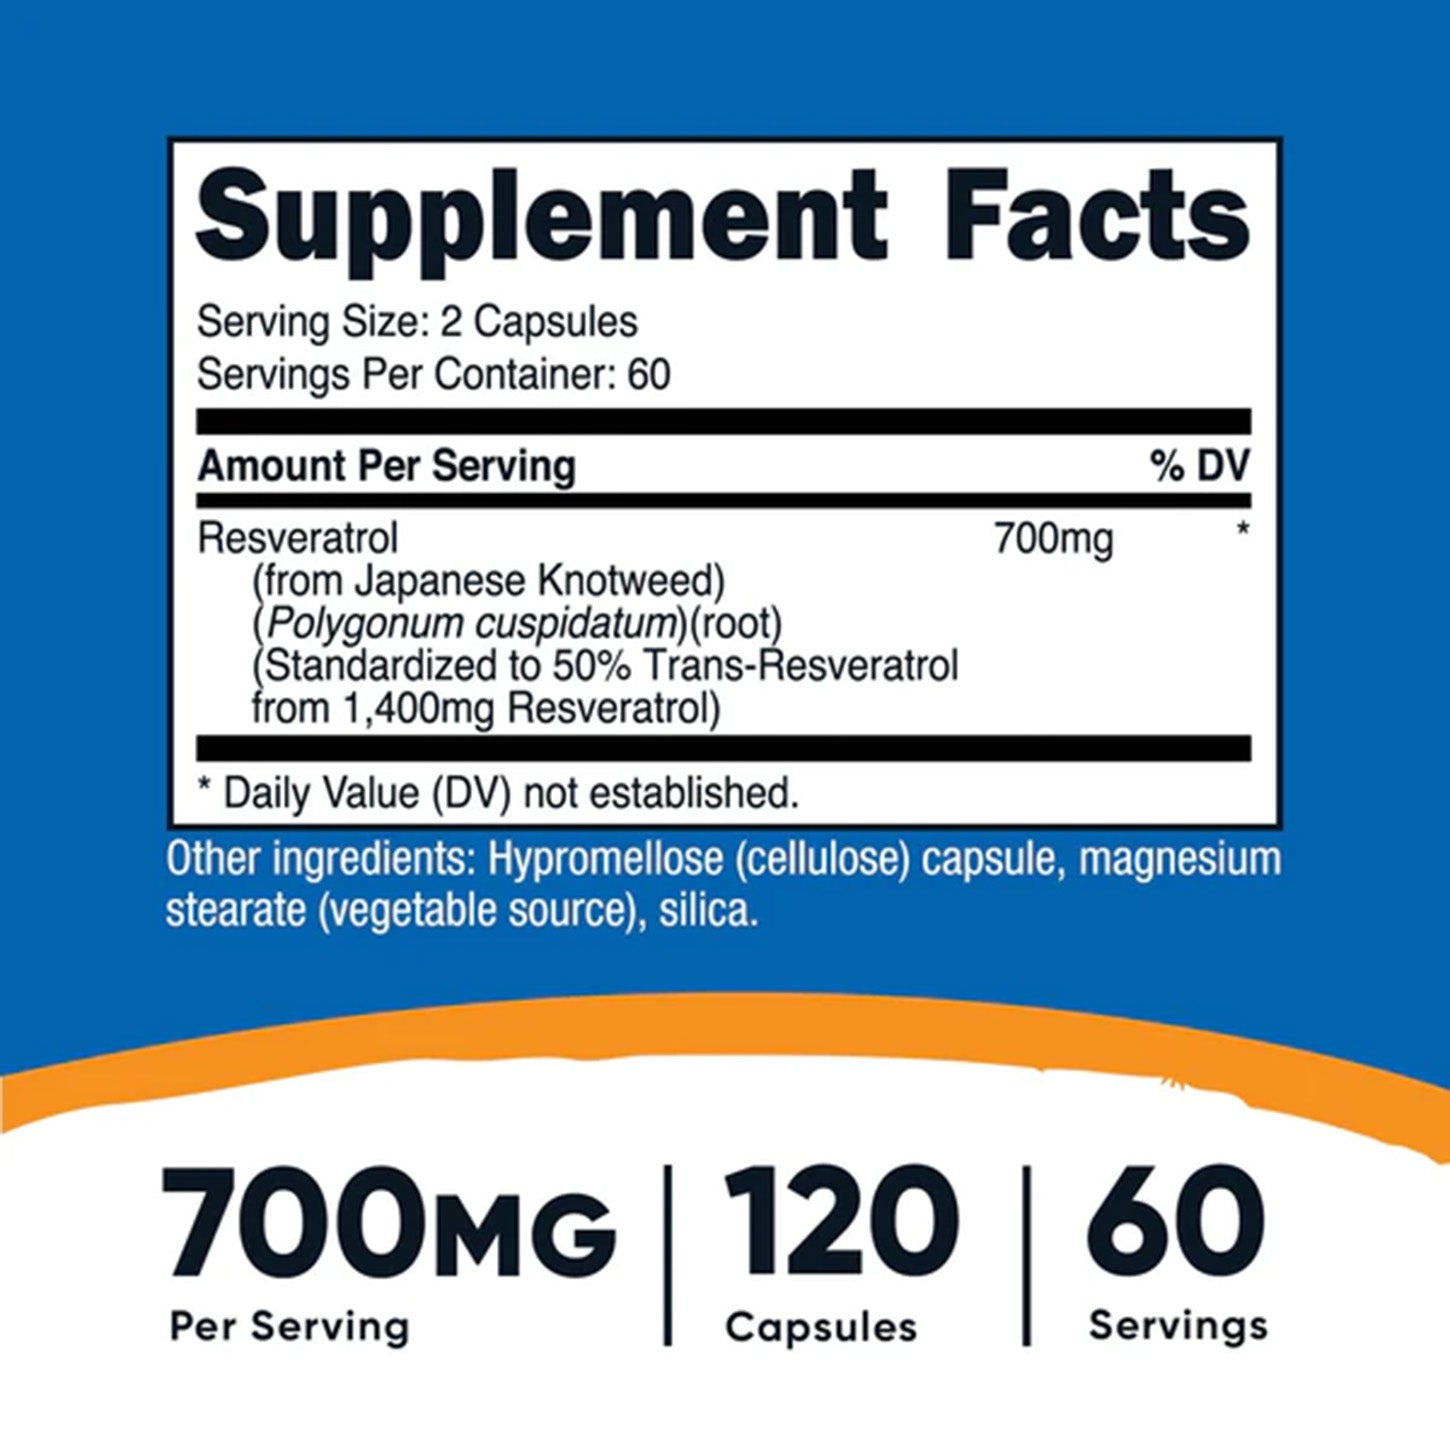 Desbloquea los Beneficios Antioxidantes con las Cápsulas de Resveratrol de Nutricost | ProHealth Shop [Panamá]